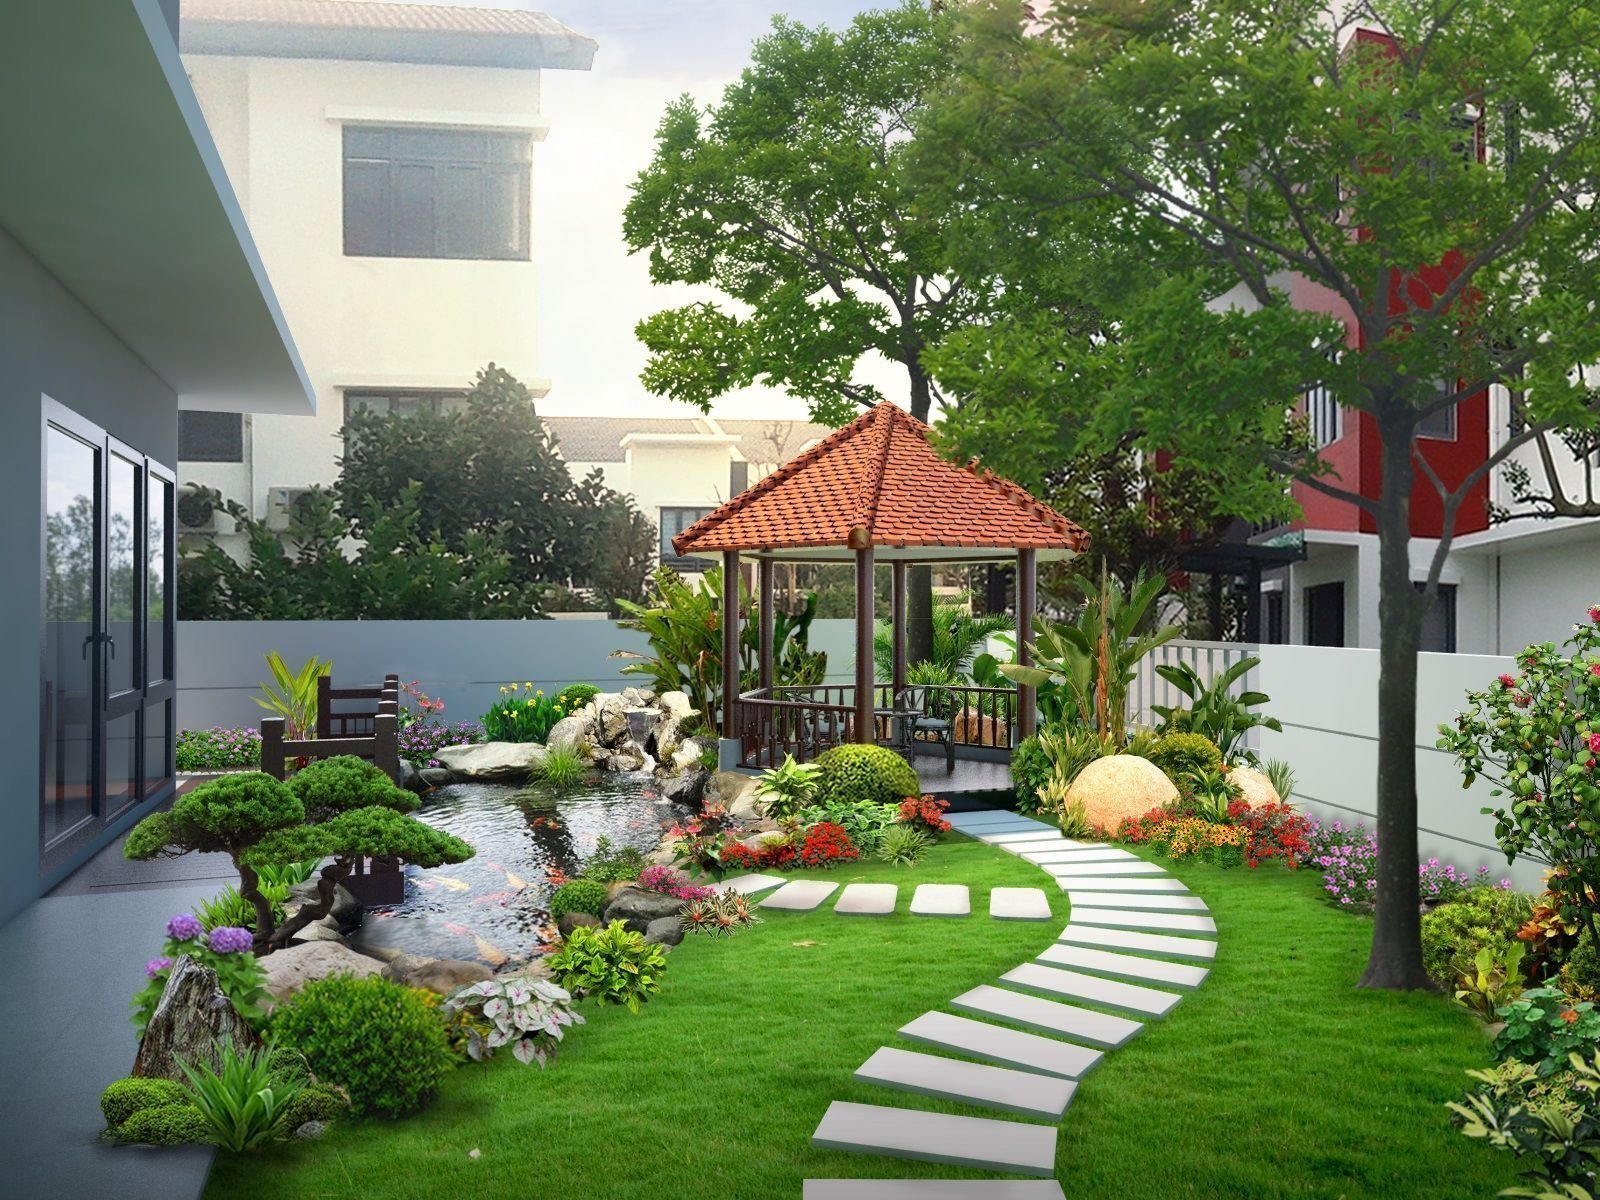 Ý tưởng thiết kế sân vườn cho nhà nhỏ theo phong cách Á Đông